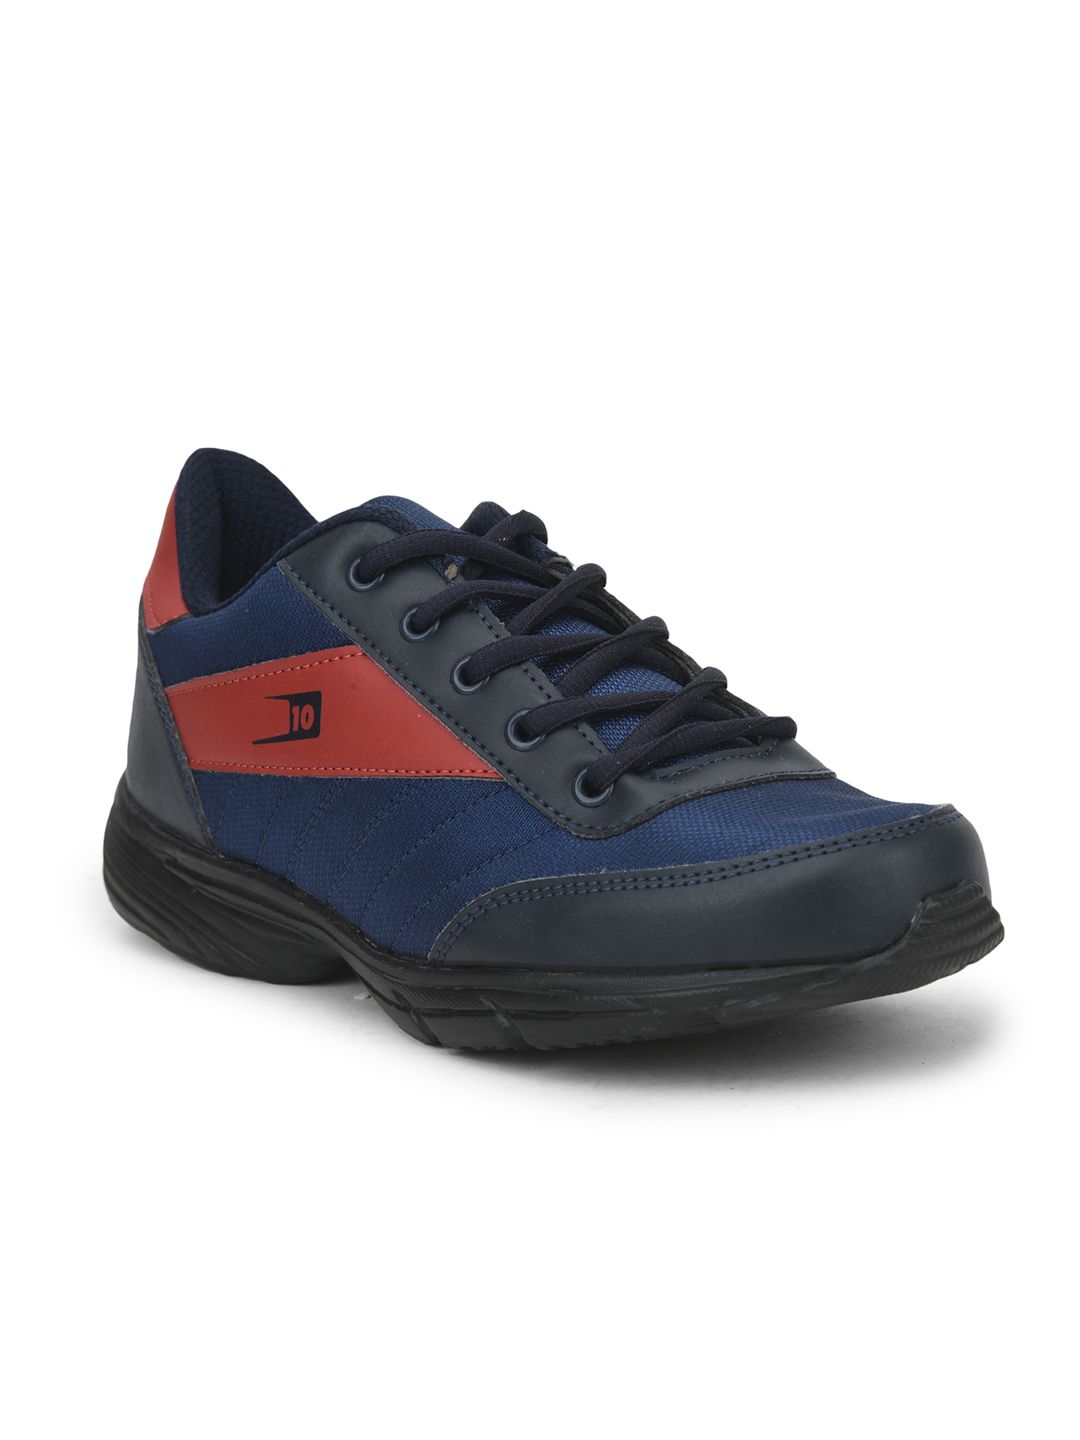     			Liberty - Red Men's Sneakers